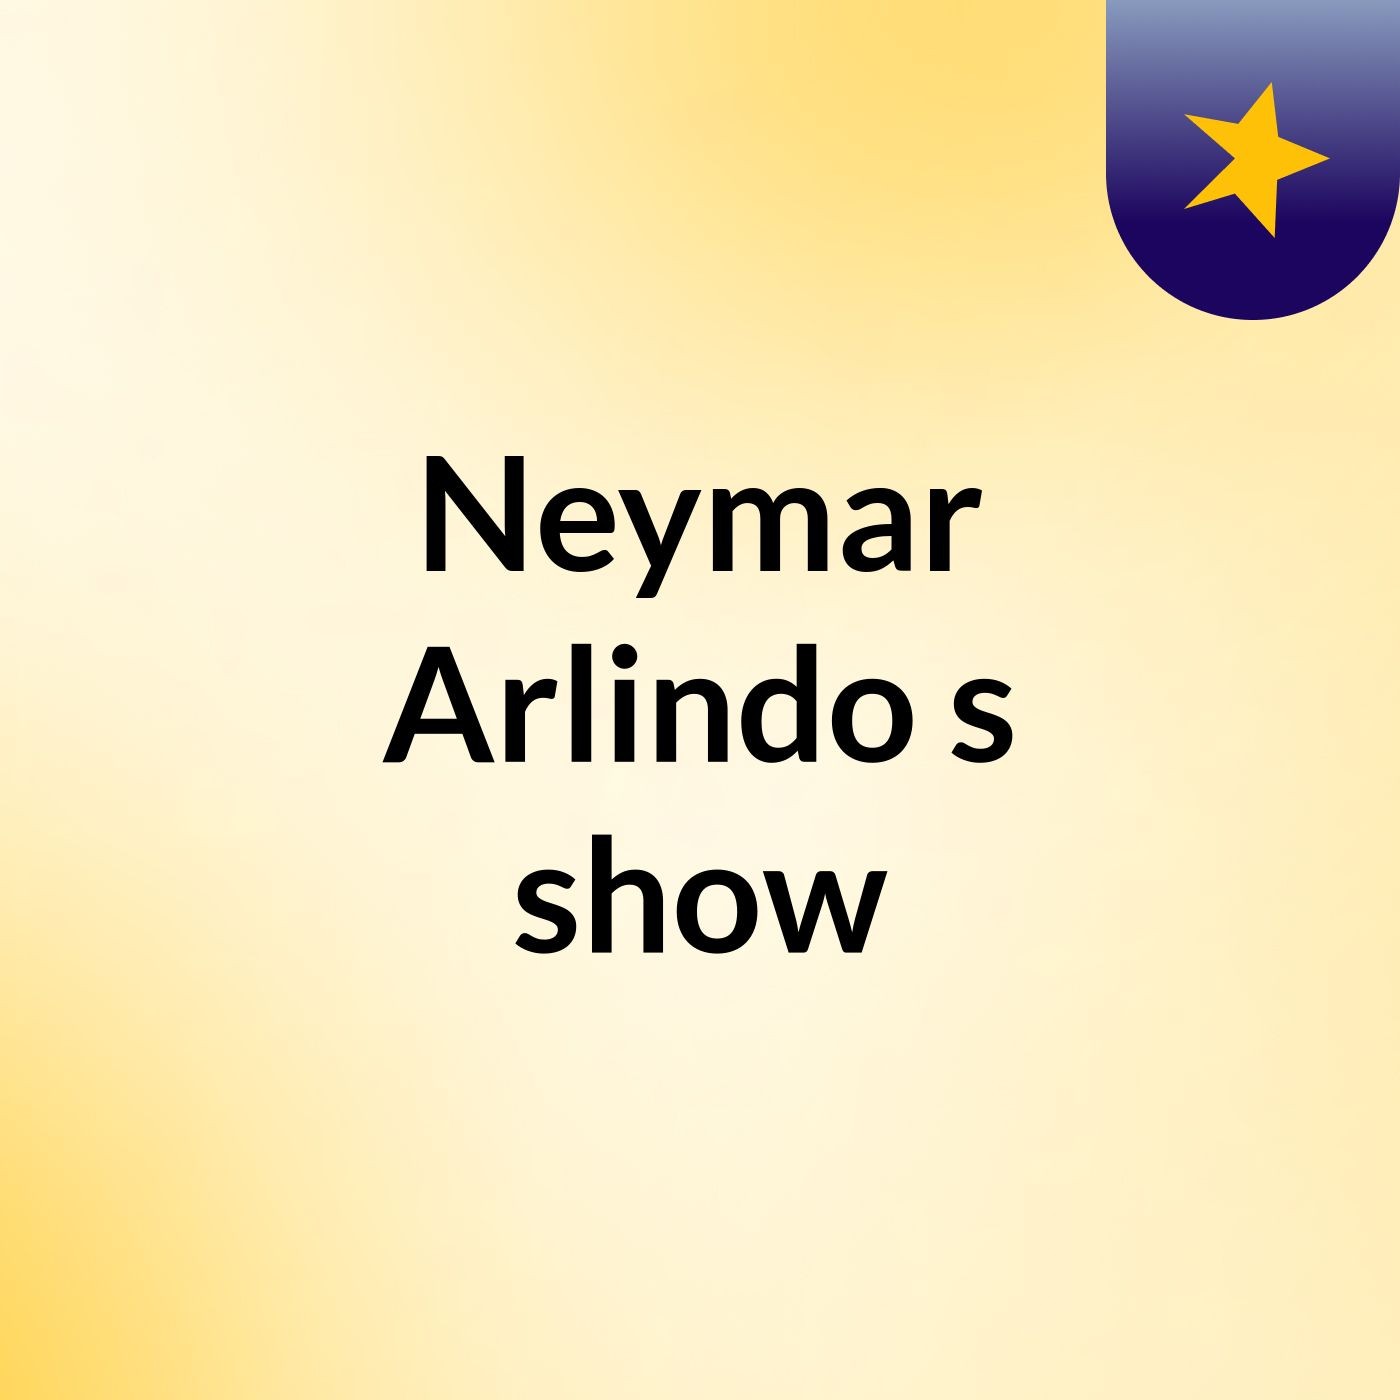 Neymar Arlindo's show